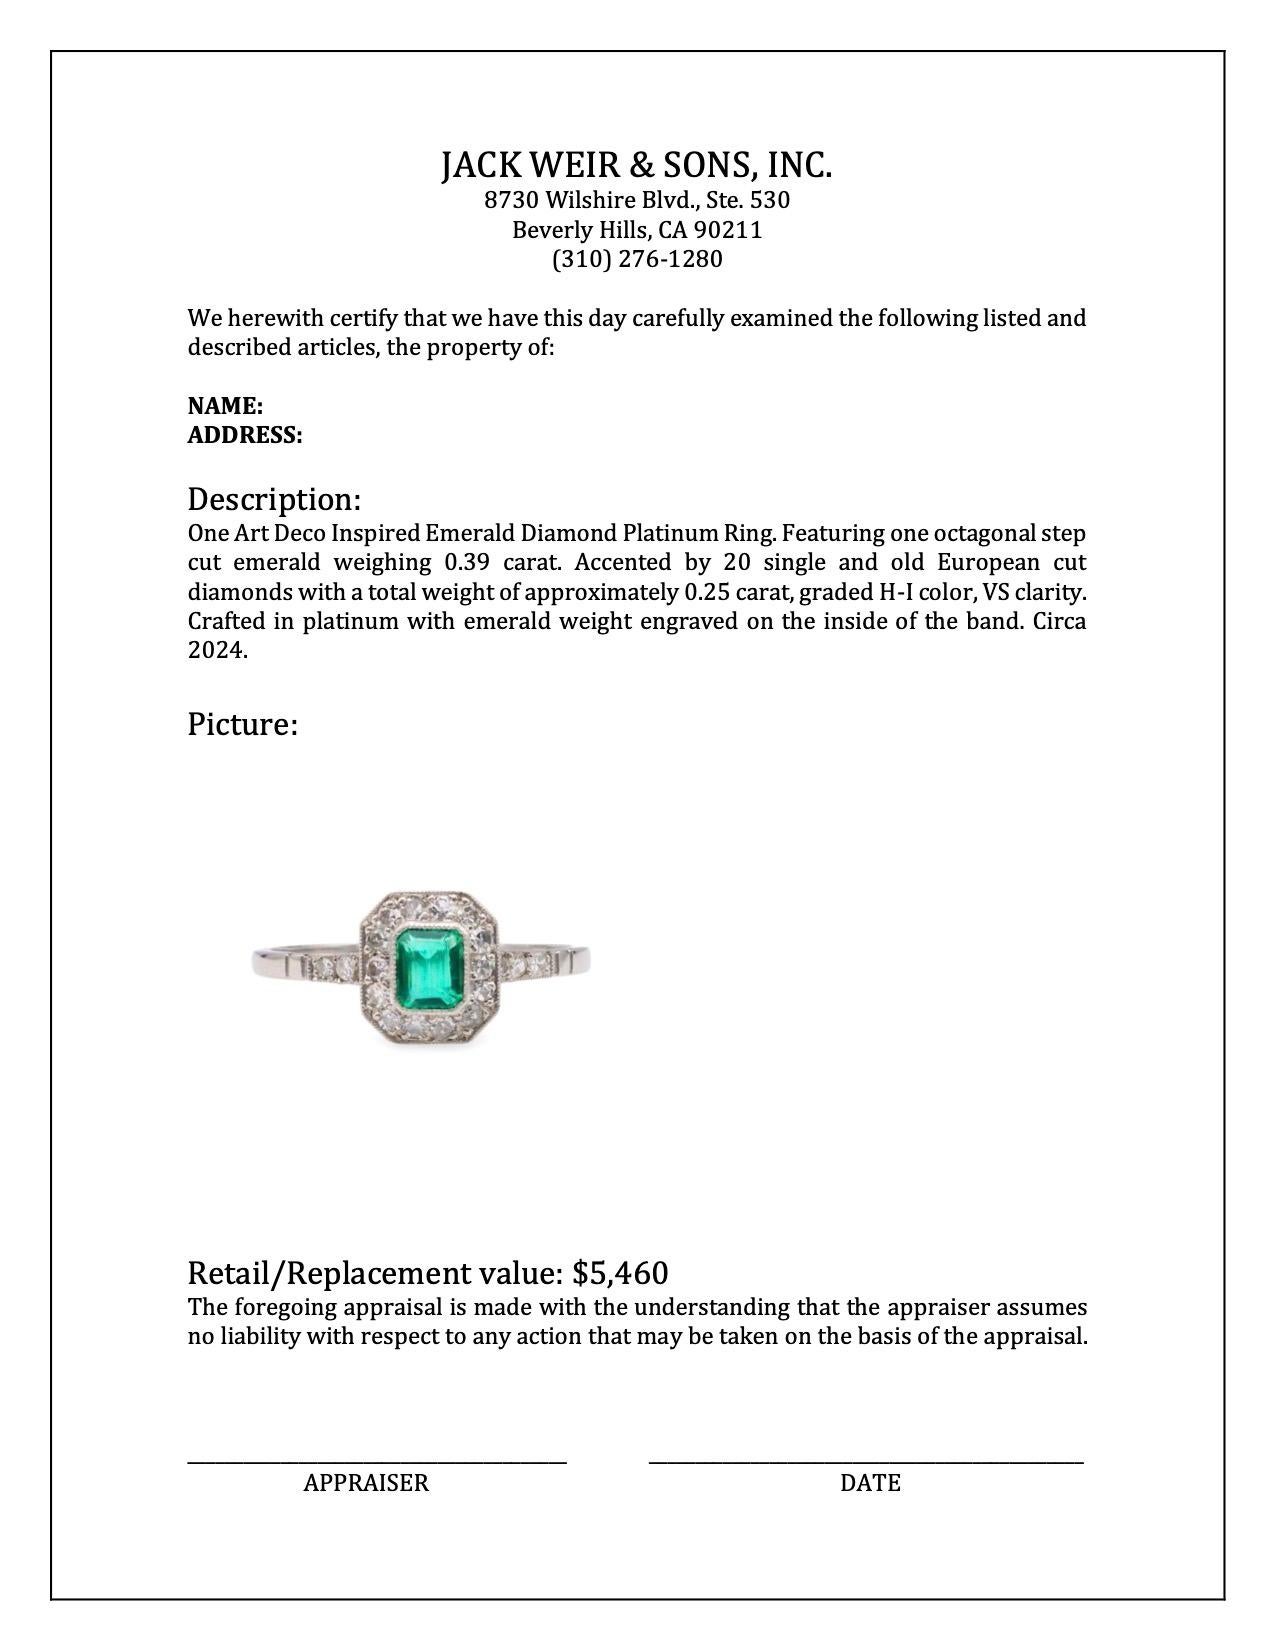 Women's or Men's Art Deco Inspired Emerald Diamond Platinum Ring For Sale